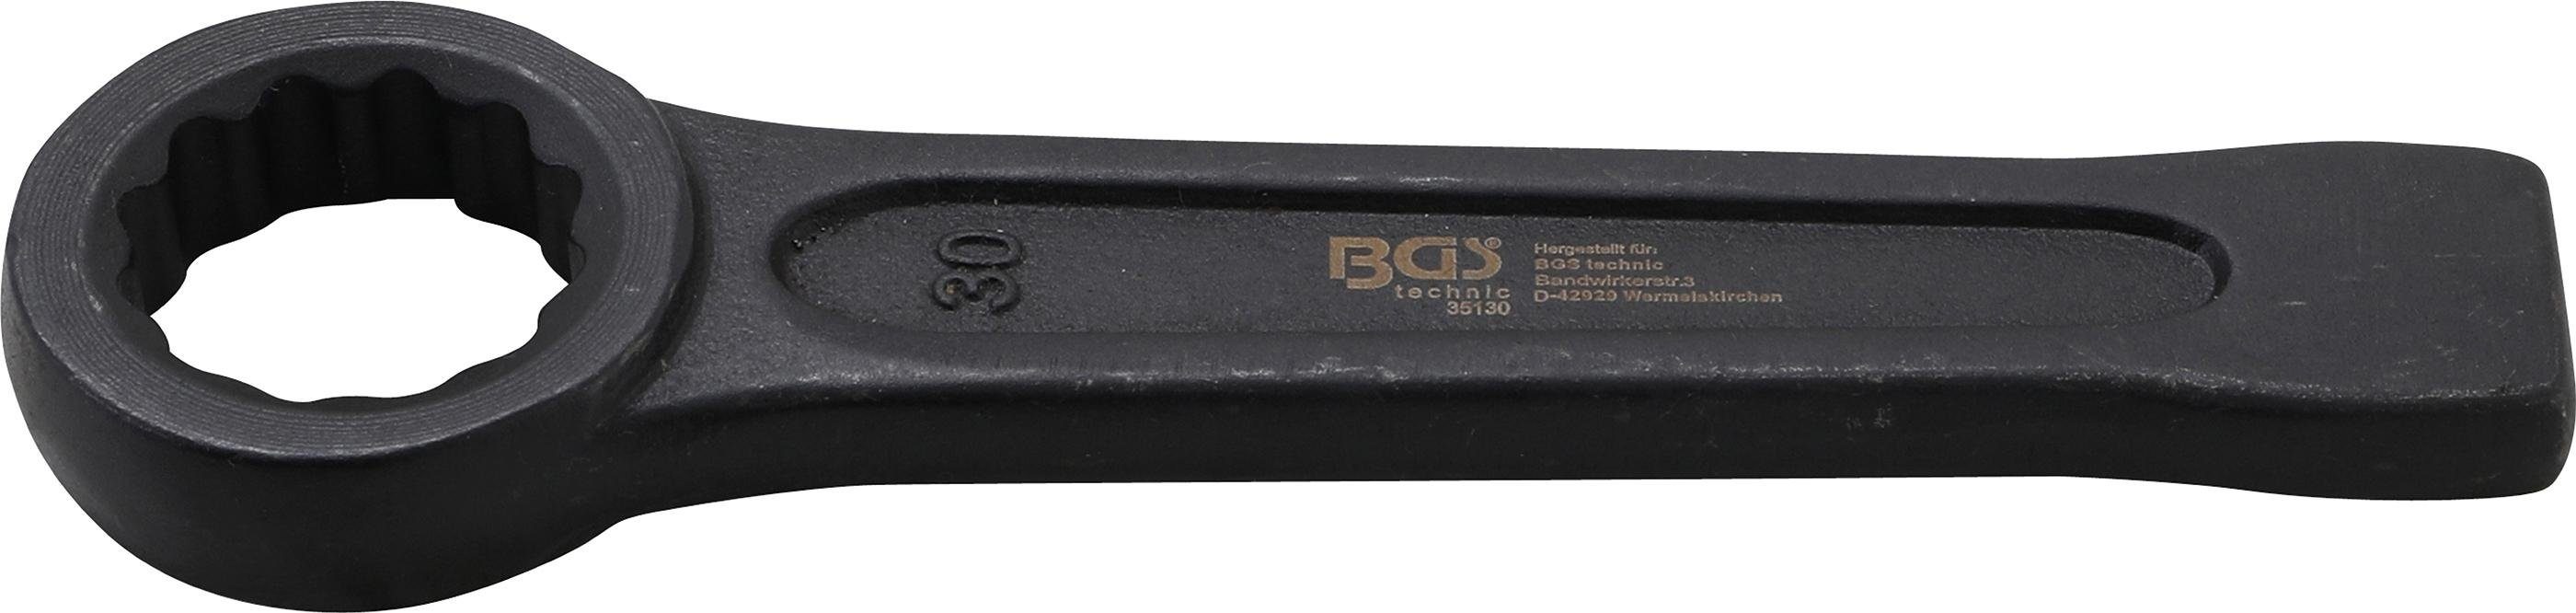 BGS technic Ringschlüssel Schlag-Ringschlüssel, SW 30 mm